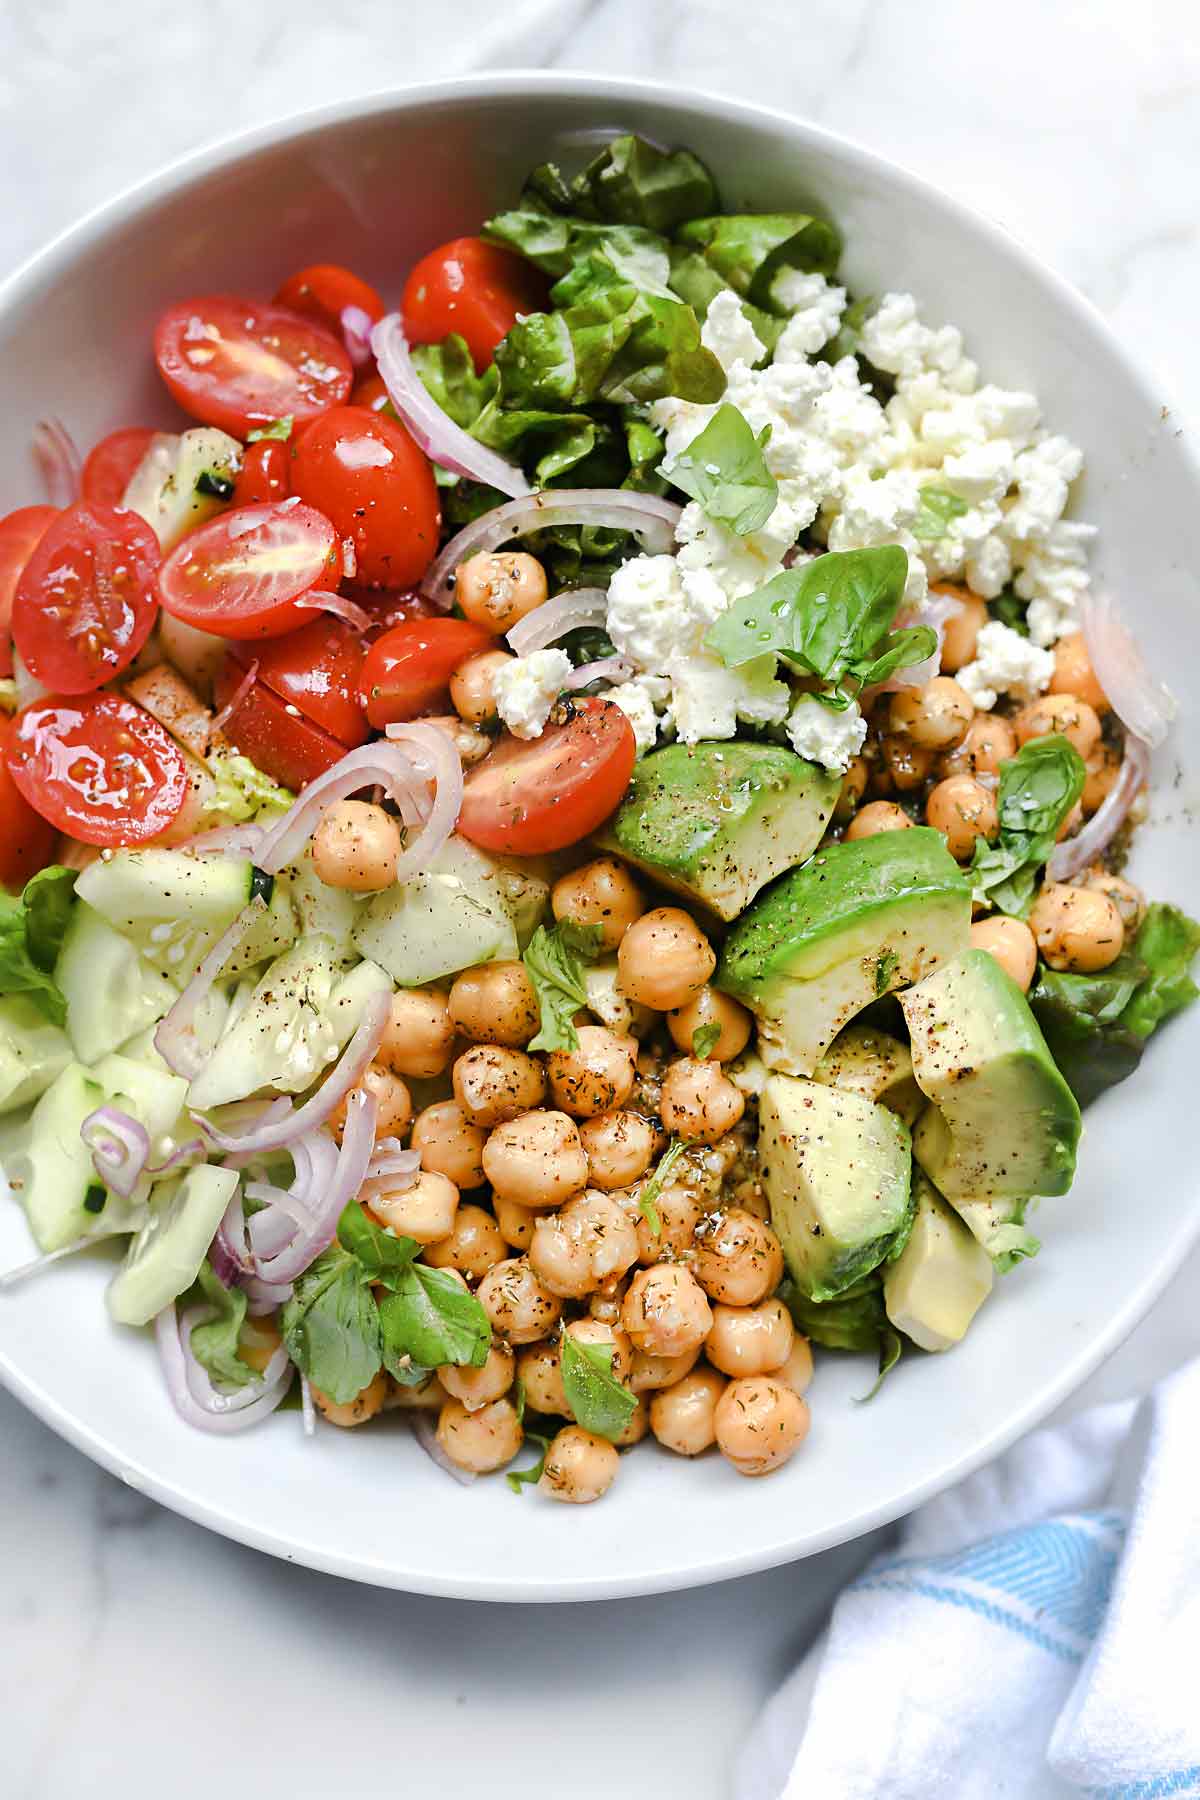 Salade verte croquante aux pois chiches et à l'avocat | foodiecrush.com #salade #avocat #recettes #lunch #pois chiches